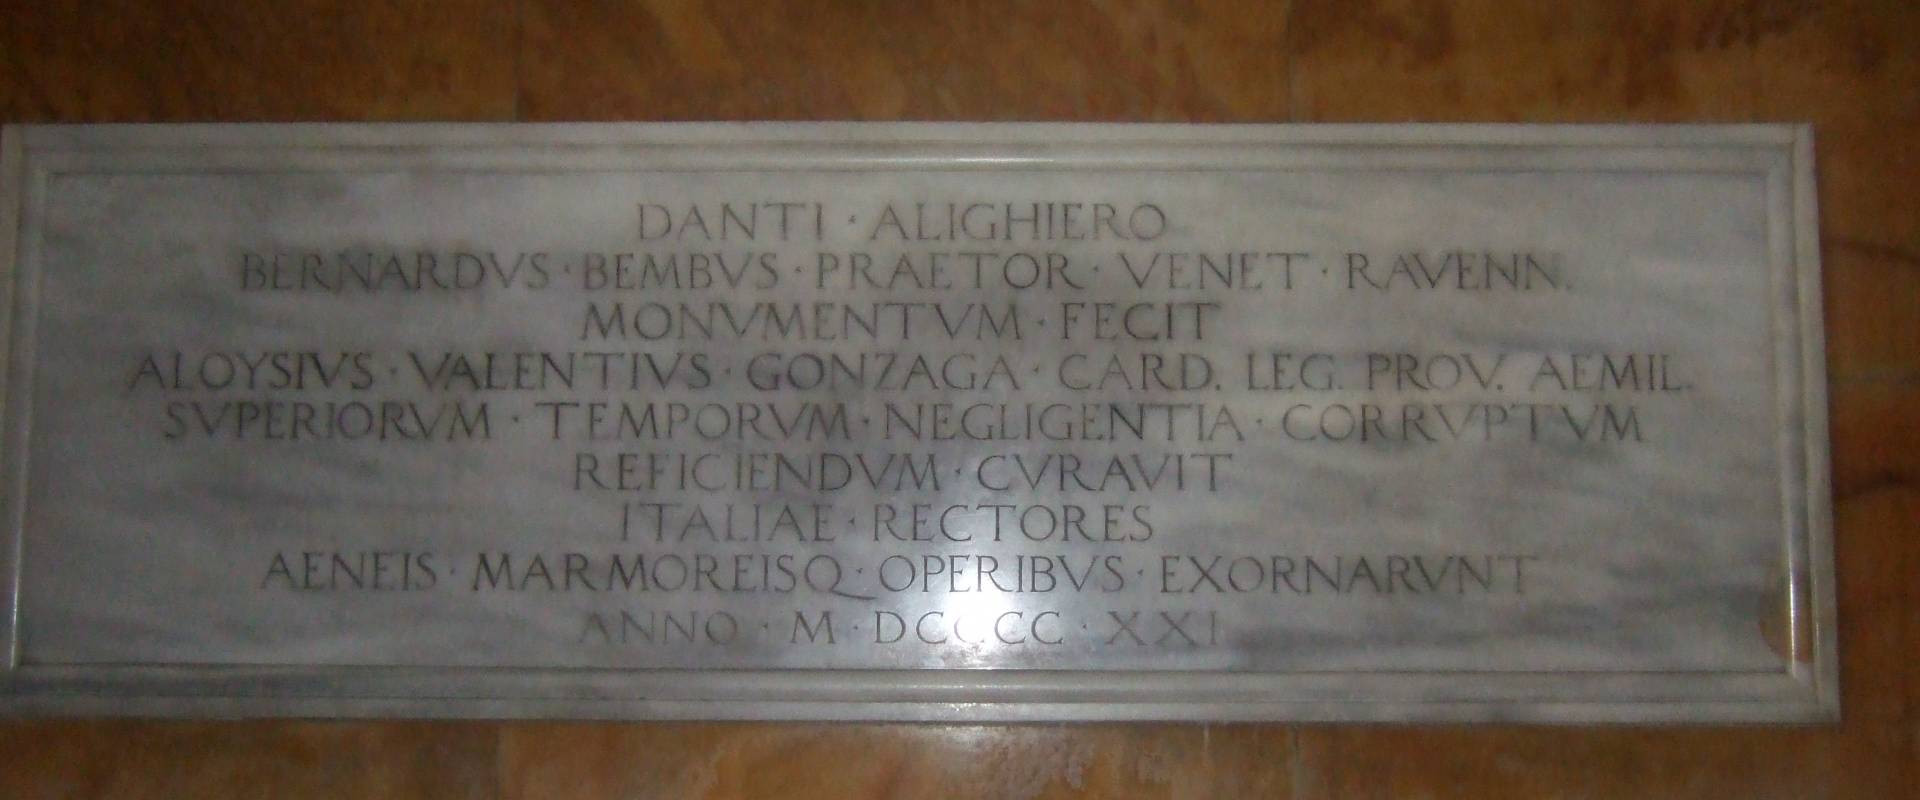 Inscriptions at Tomba di Dante foto di Amirber